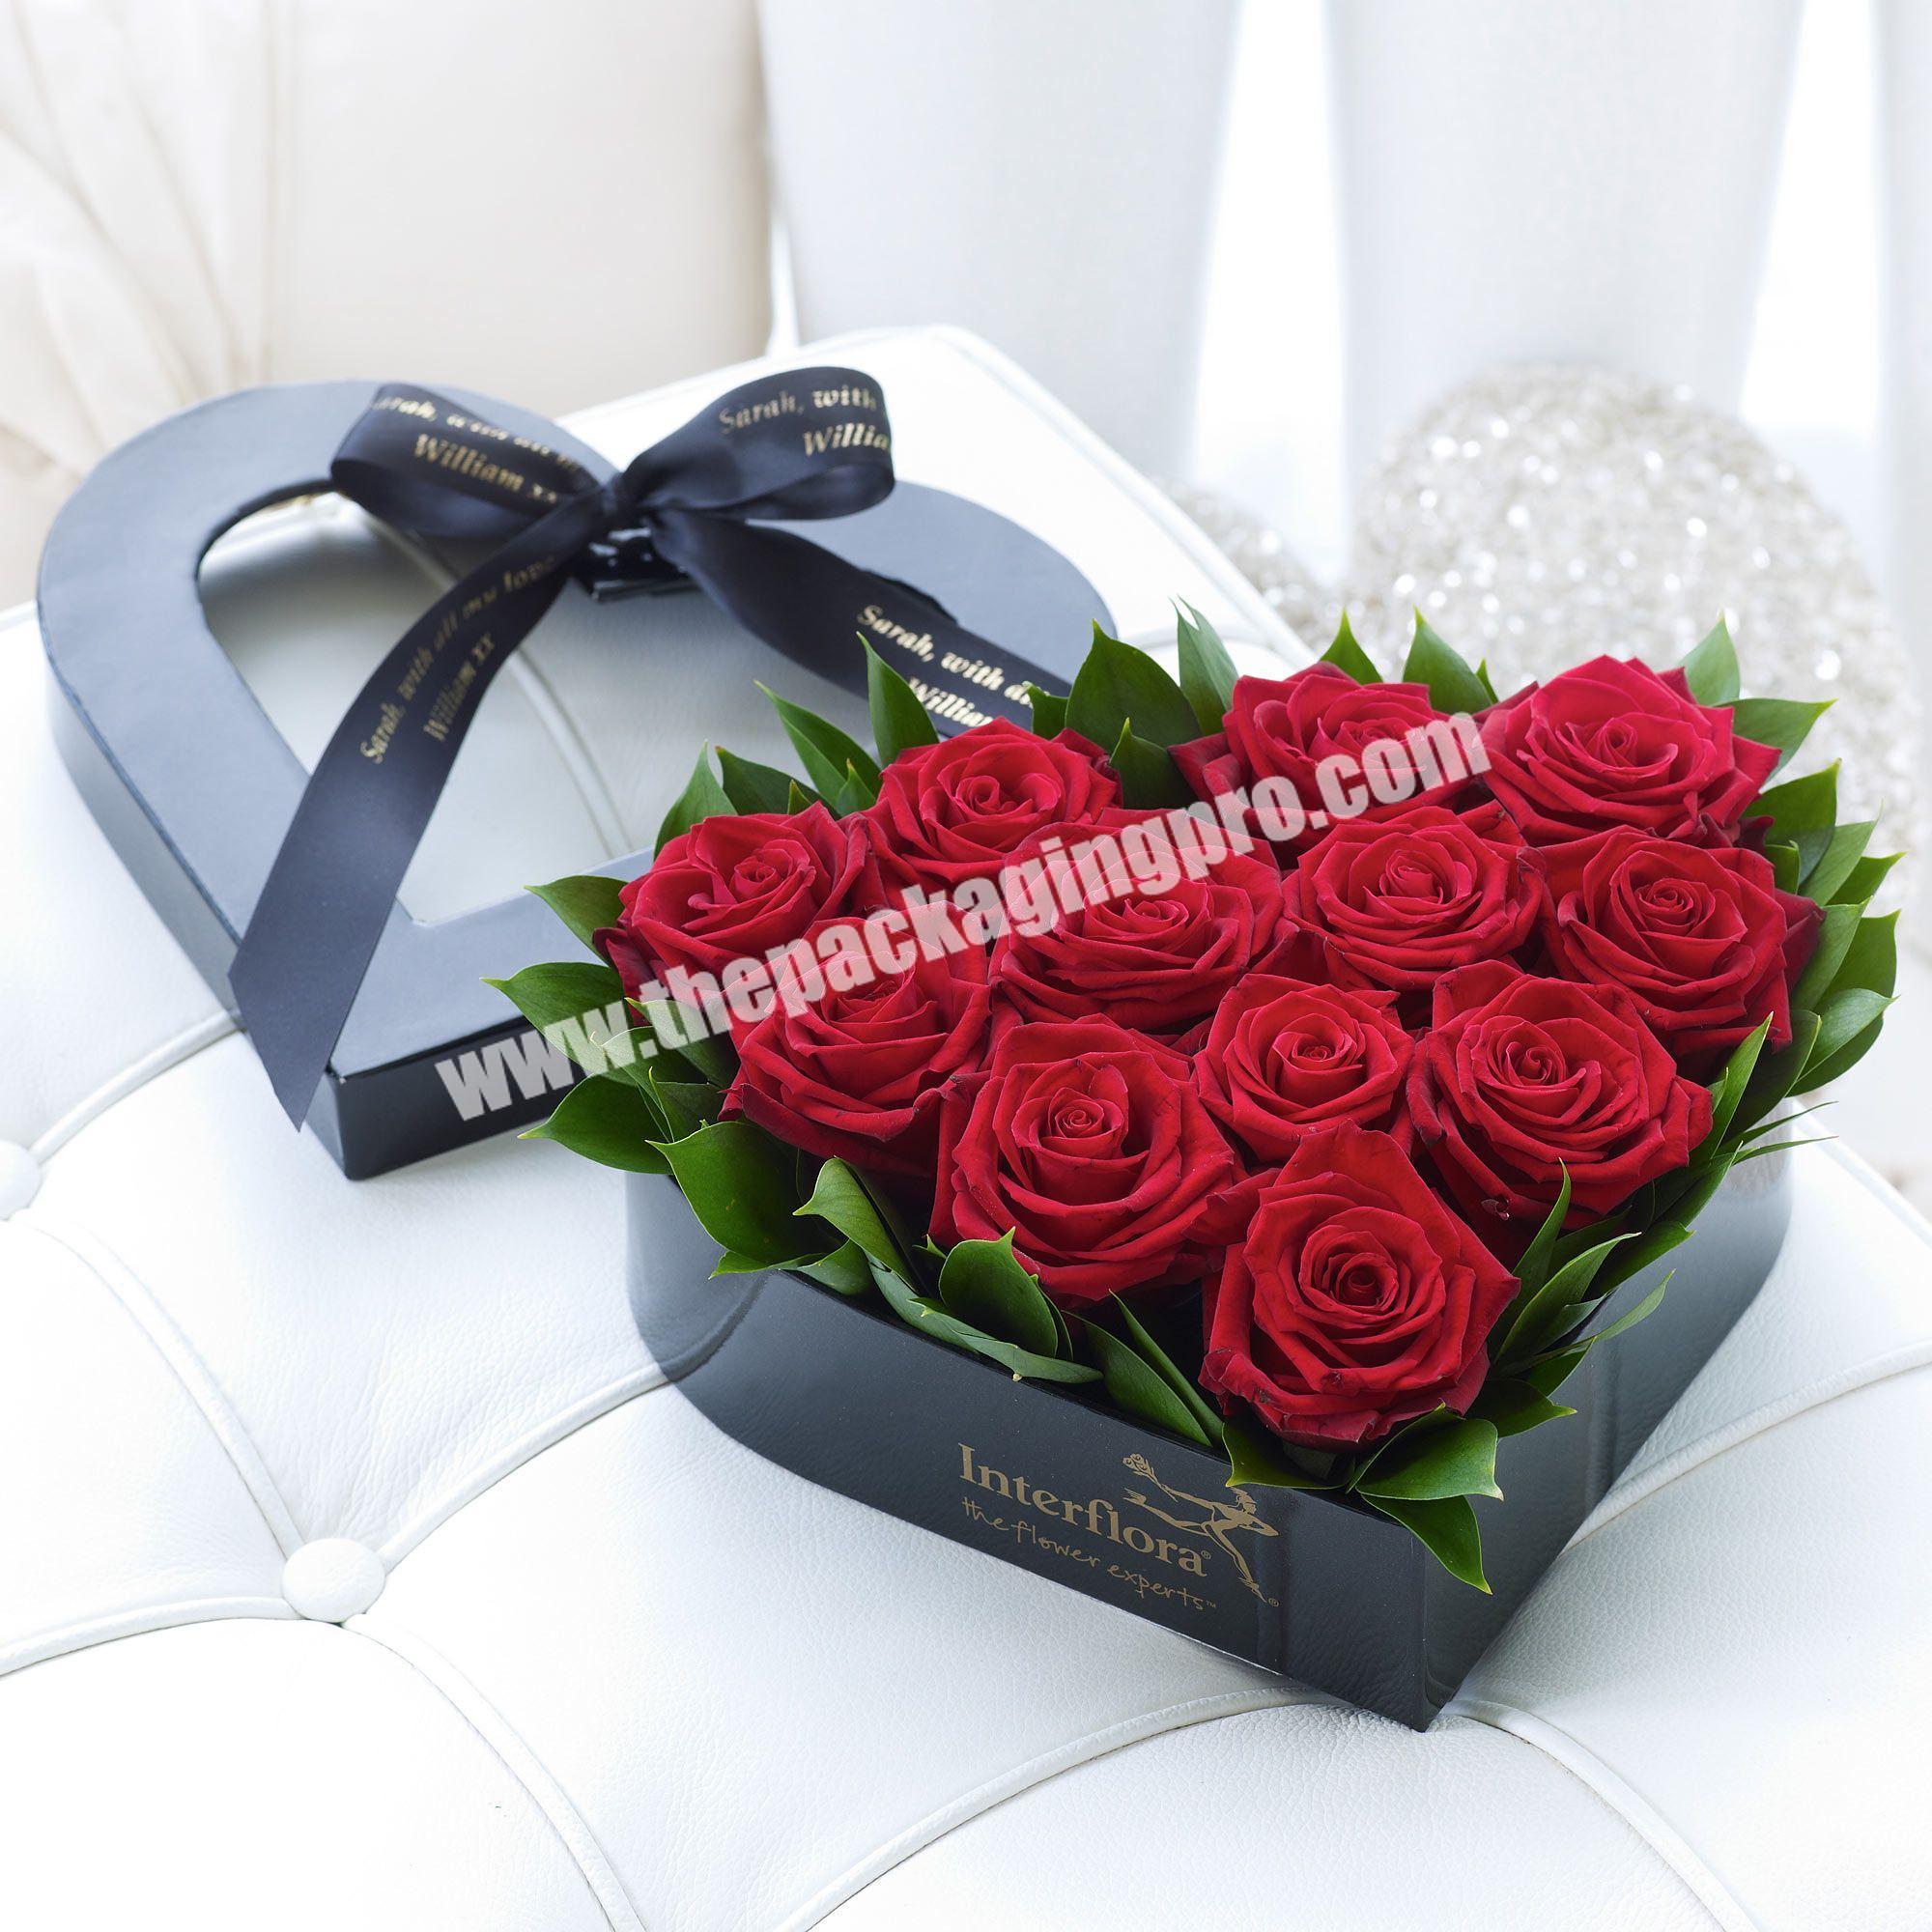 2020 factory luxury custom rose flower box packaging custom logo printing design heart flower box set gift box